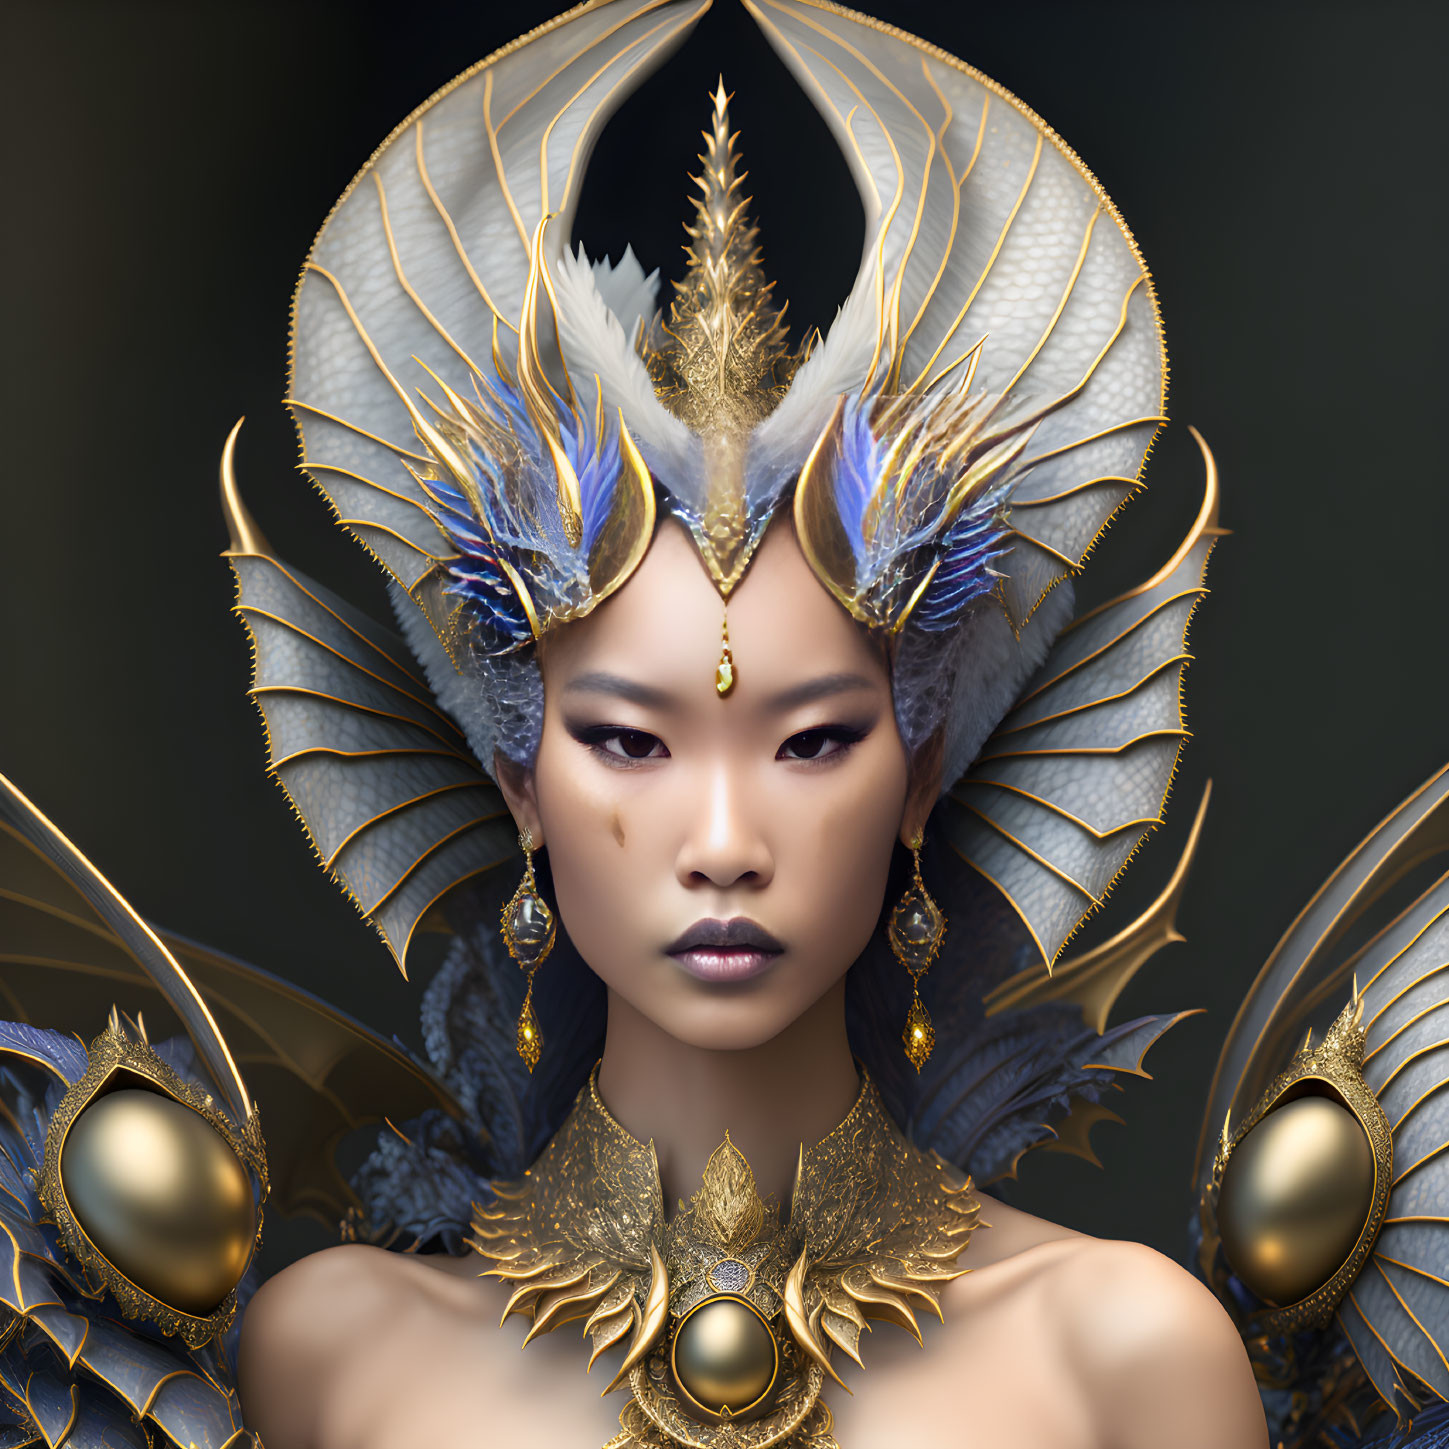 Elaborate Golden Headdress and Ornate Shoulder Armor Displayed